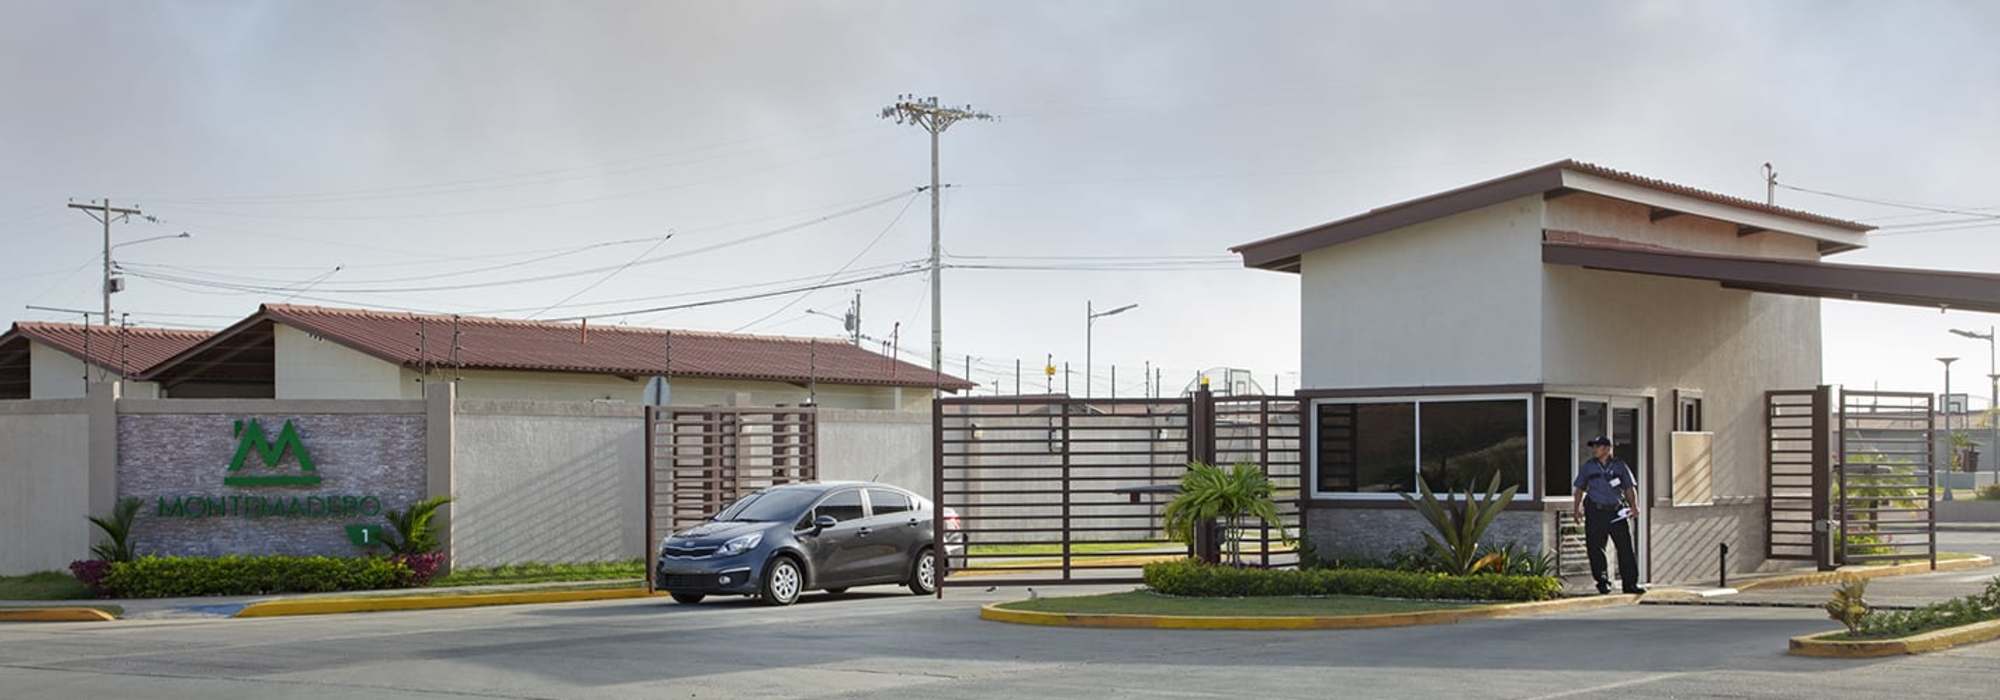 Casas en Panamá Este | Montemadero